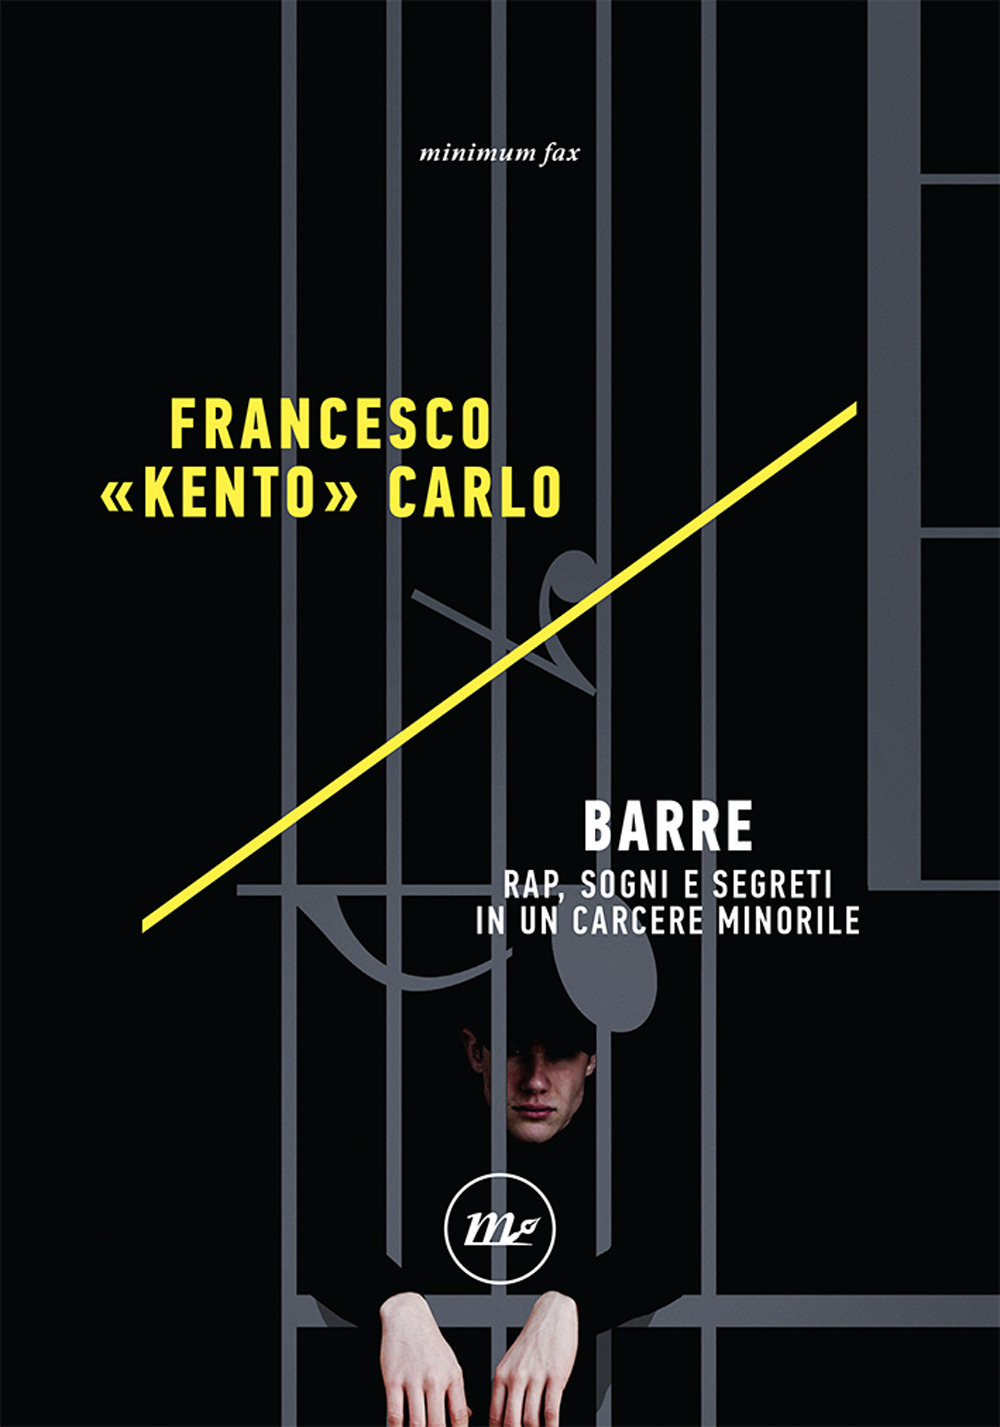 BARRE. RAP, SOGNI E SEGRETI IN UN CARCERE MINORILE - Carlo Francesco «Kento» - 9788833892245